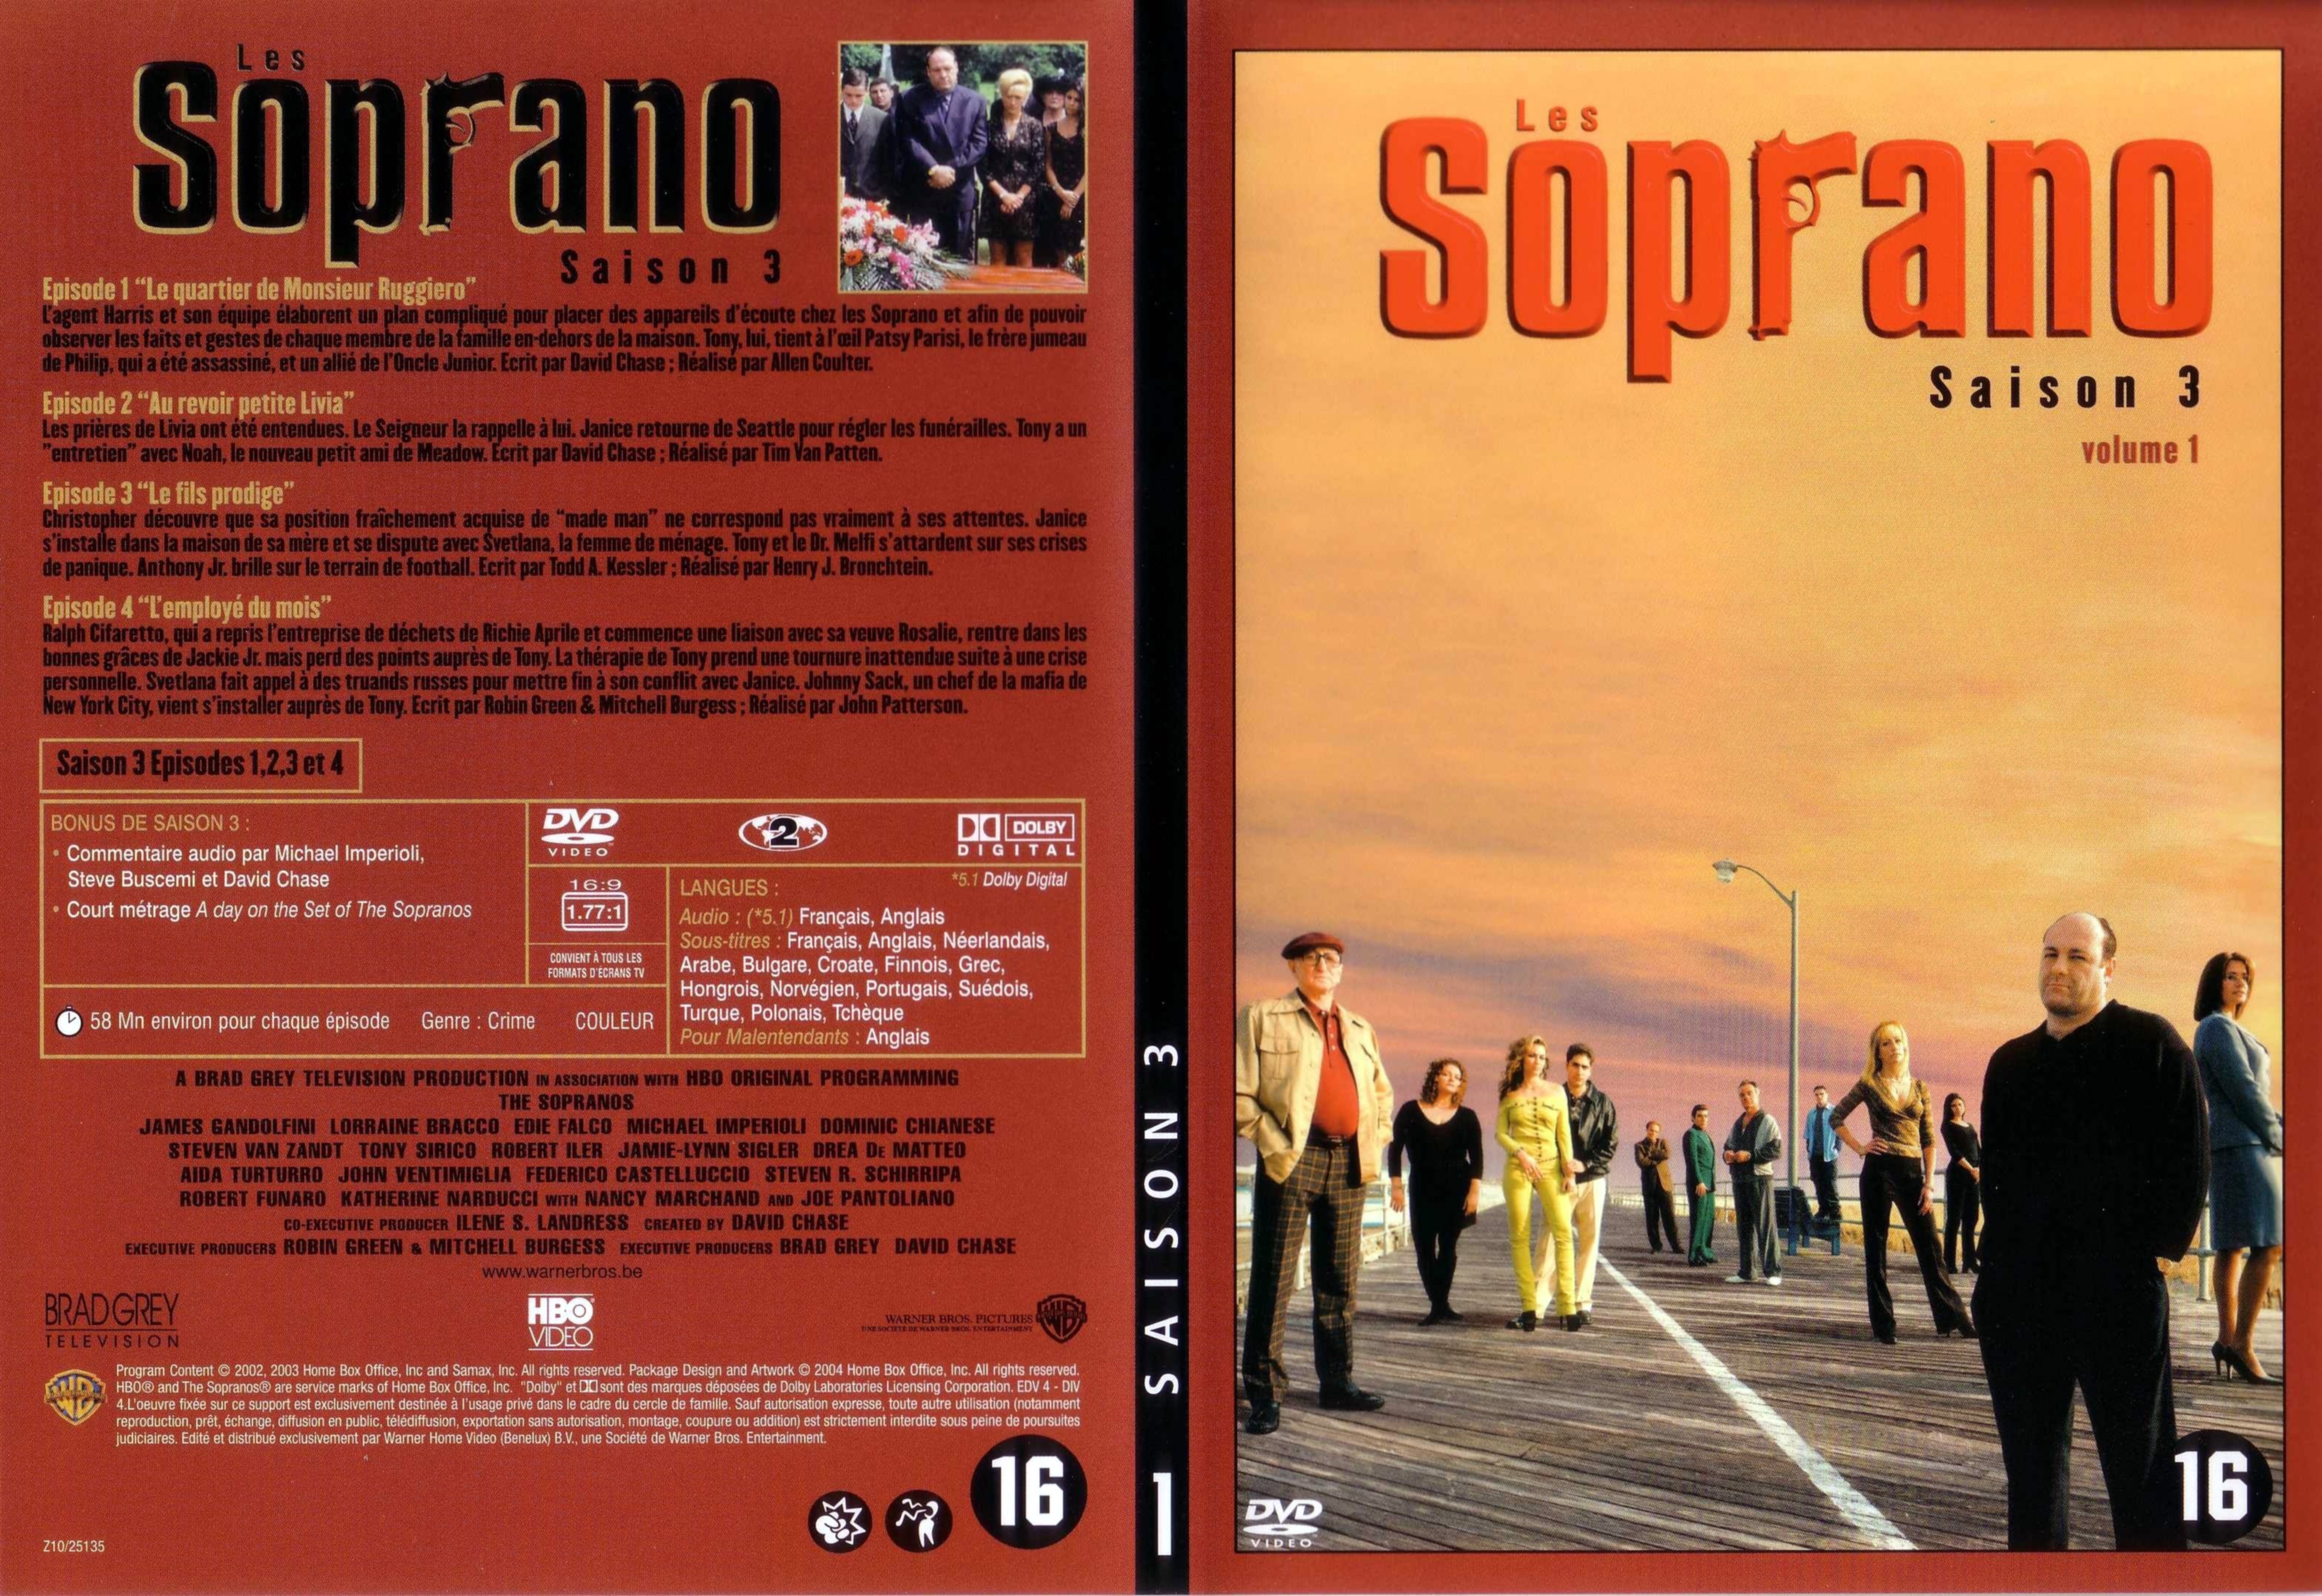 Jaquette DVD Les Soprano saison 3 DVD 1